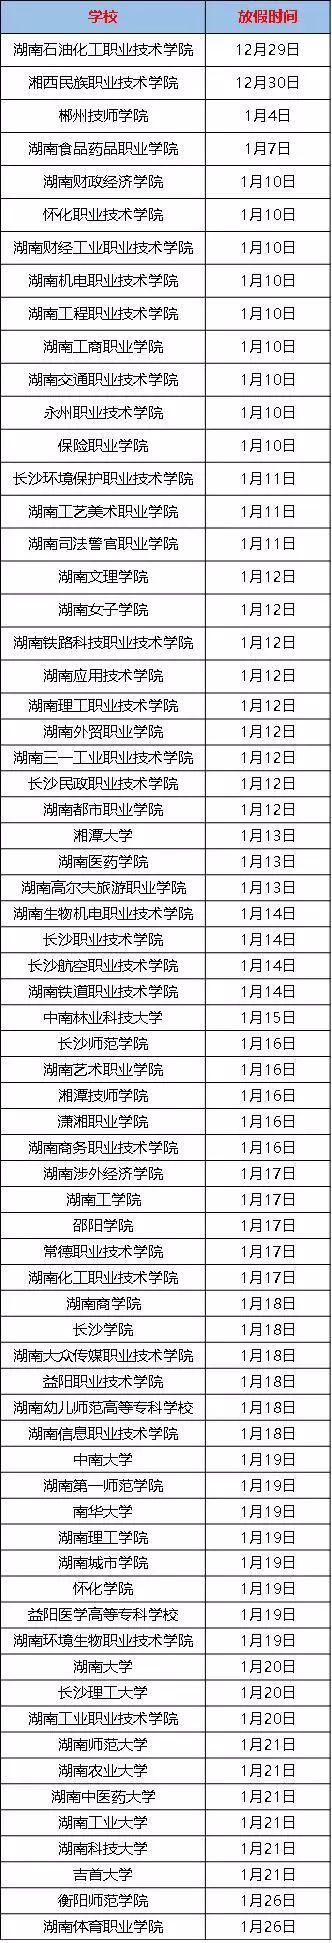 湖南68所高校2018寒假时长排行榜，最长达70天！